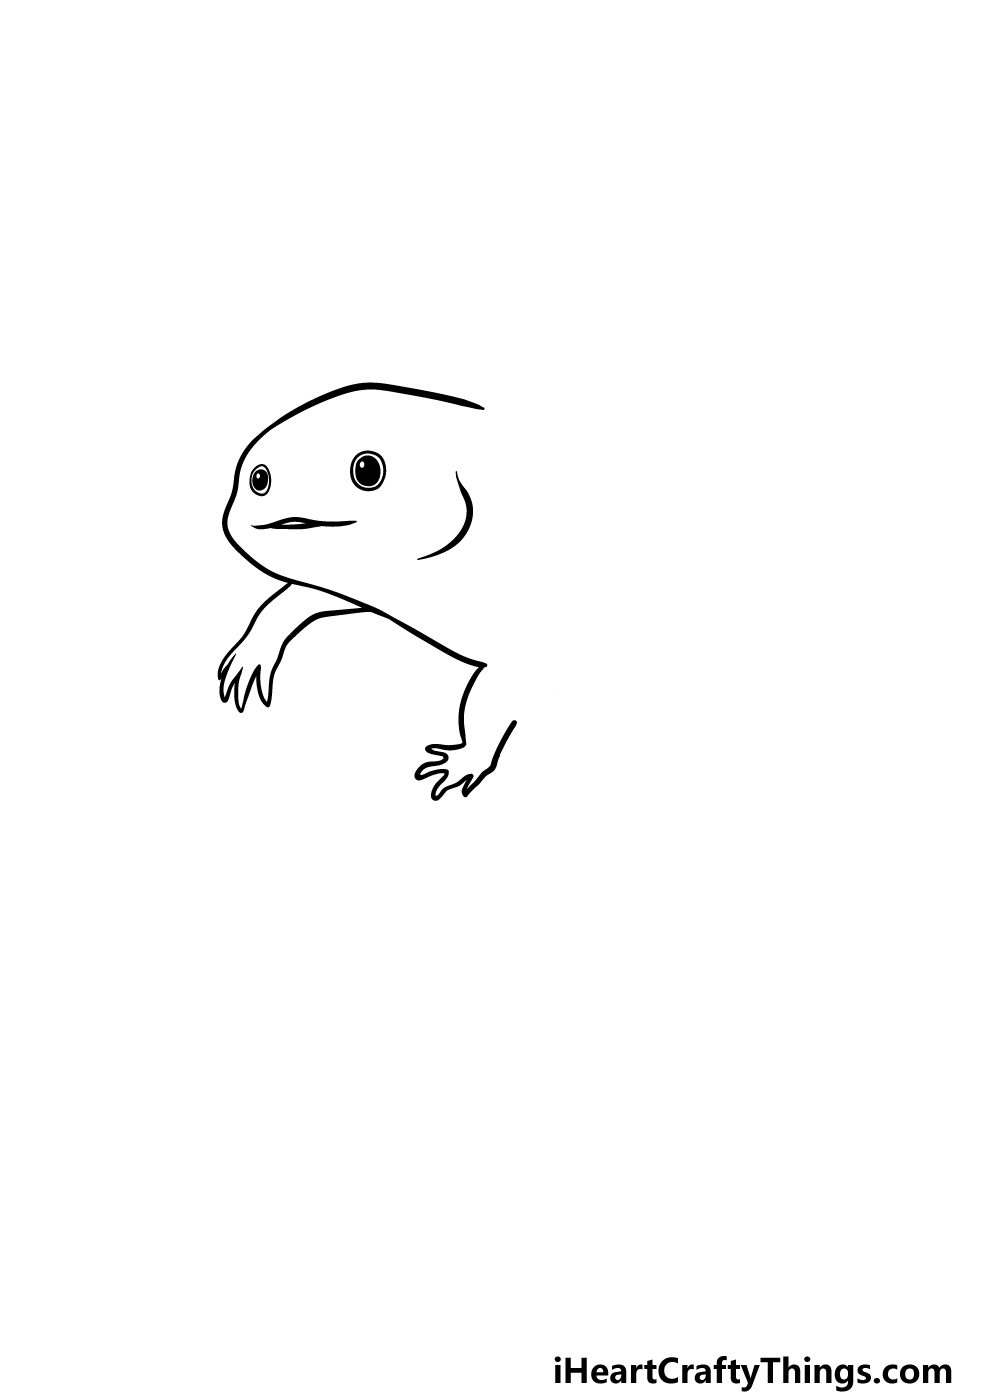 Drawing An Axolotl step 2